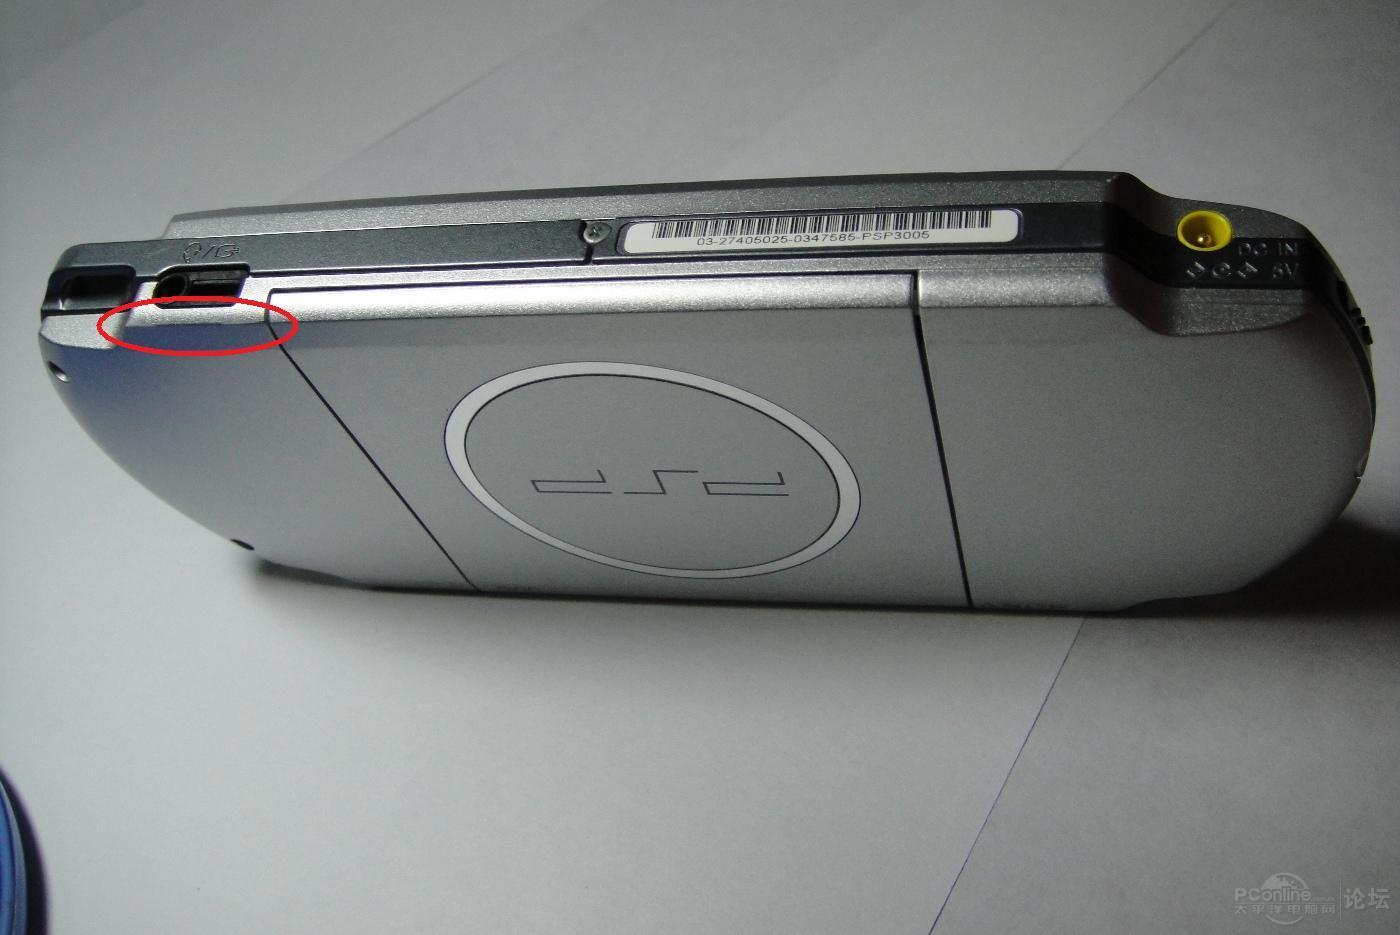 出售PSP3000银色已破解(有图),8G红棒,1100元